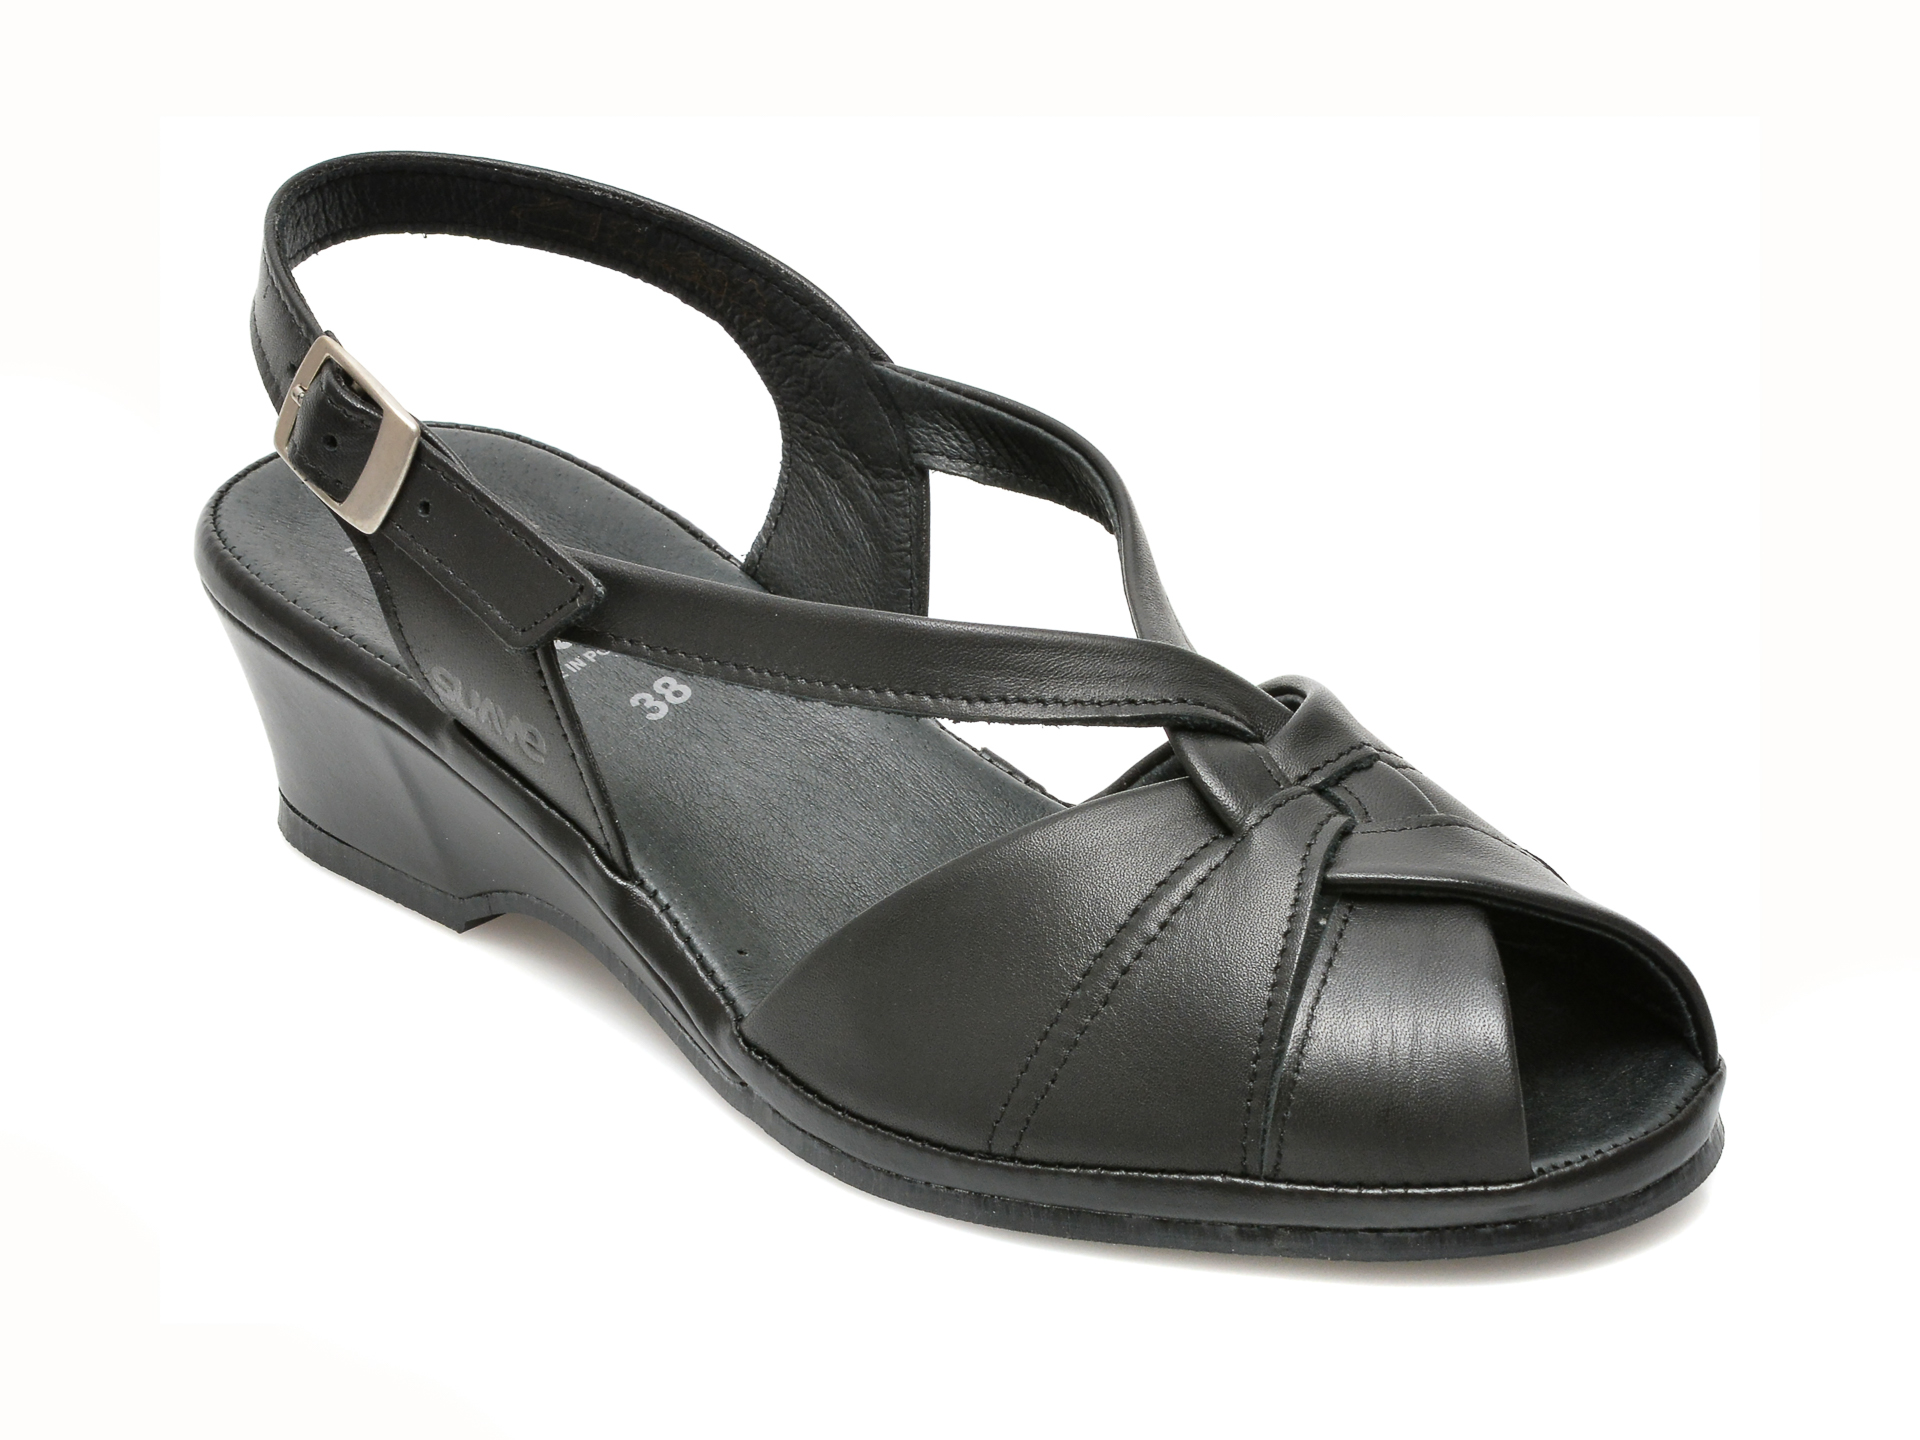 Sandale SUAVE negre, 065T, din piele naturala